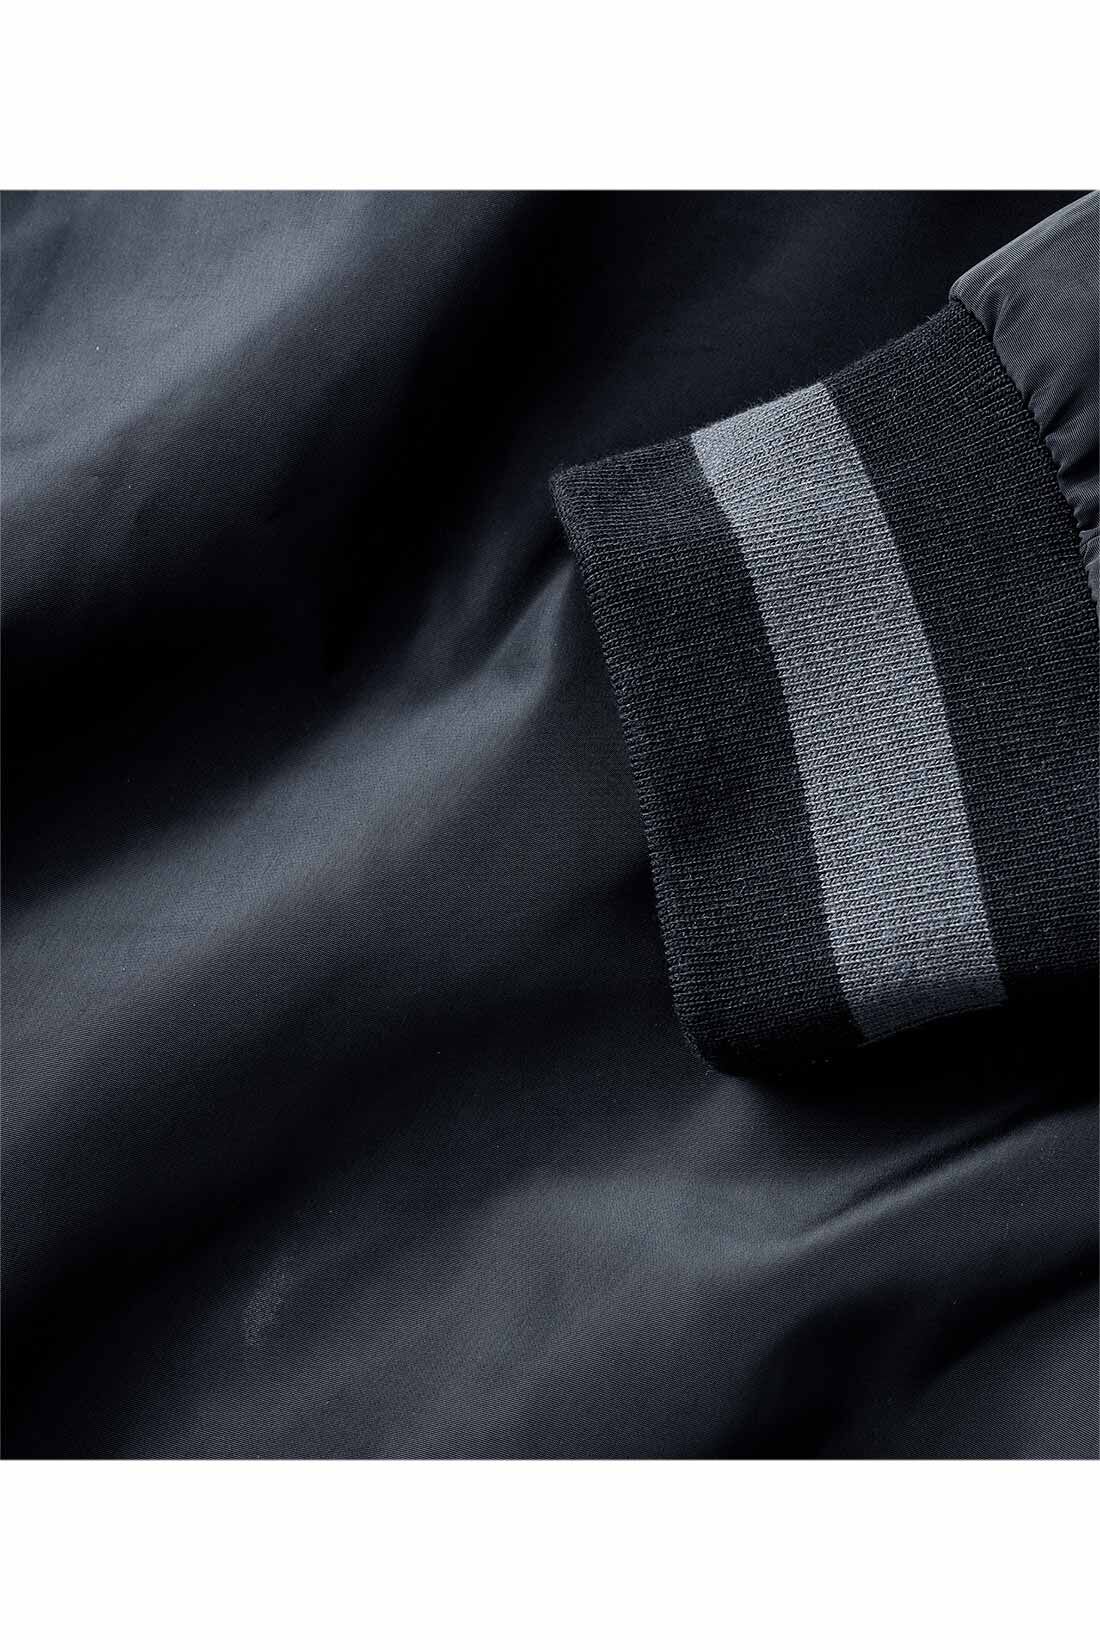 IEDIT[イディット]　小森美穂子さんコラボ きれいめ大人長め丈スタジャン〈ブラック〉|品よく着られる、テカリをおさえたポリエステル素材。